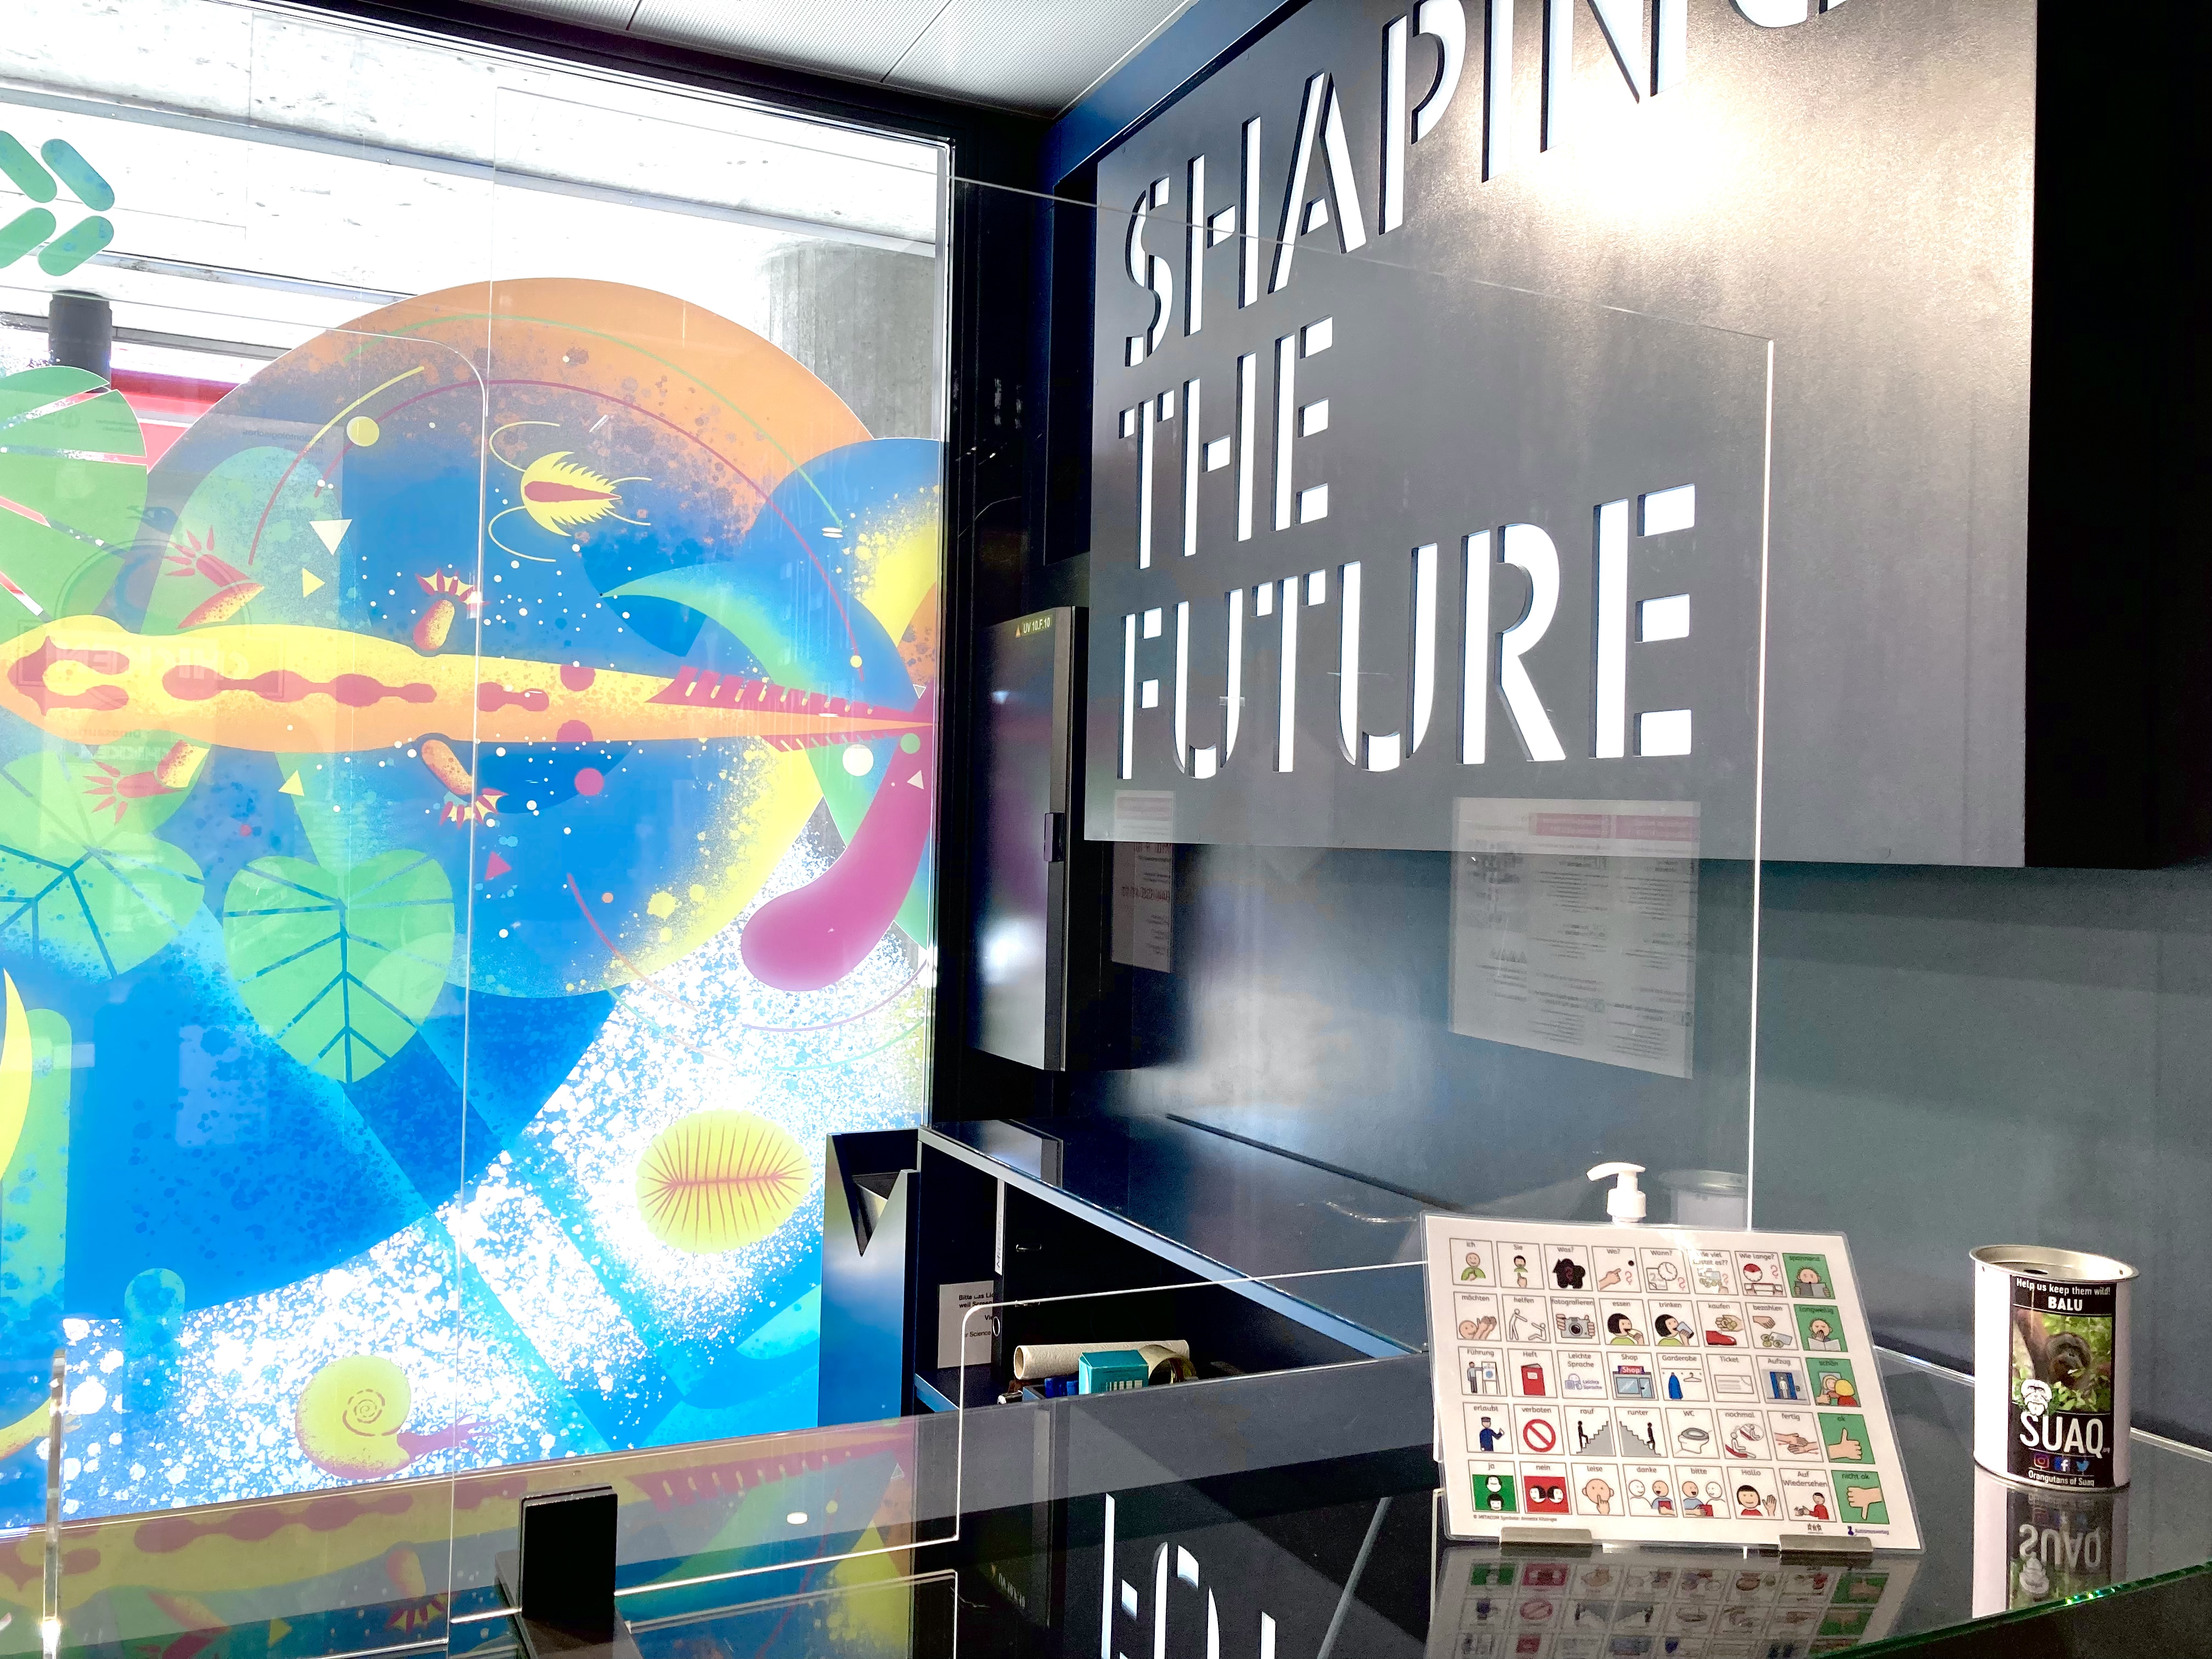 Die Theke des Science Exploratorium UZH mit der Kommunikationstafel. Im Hintergrund ist das bunte Fenster des Museums zu sehen, und am rechten Rand der Schriftzug "Shaping the future".